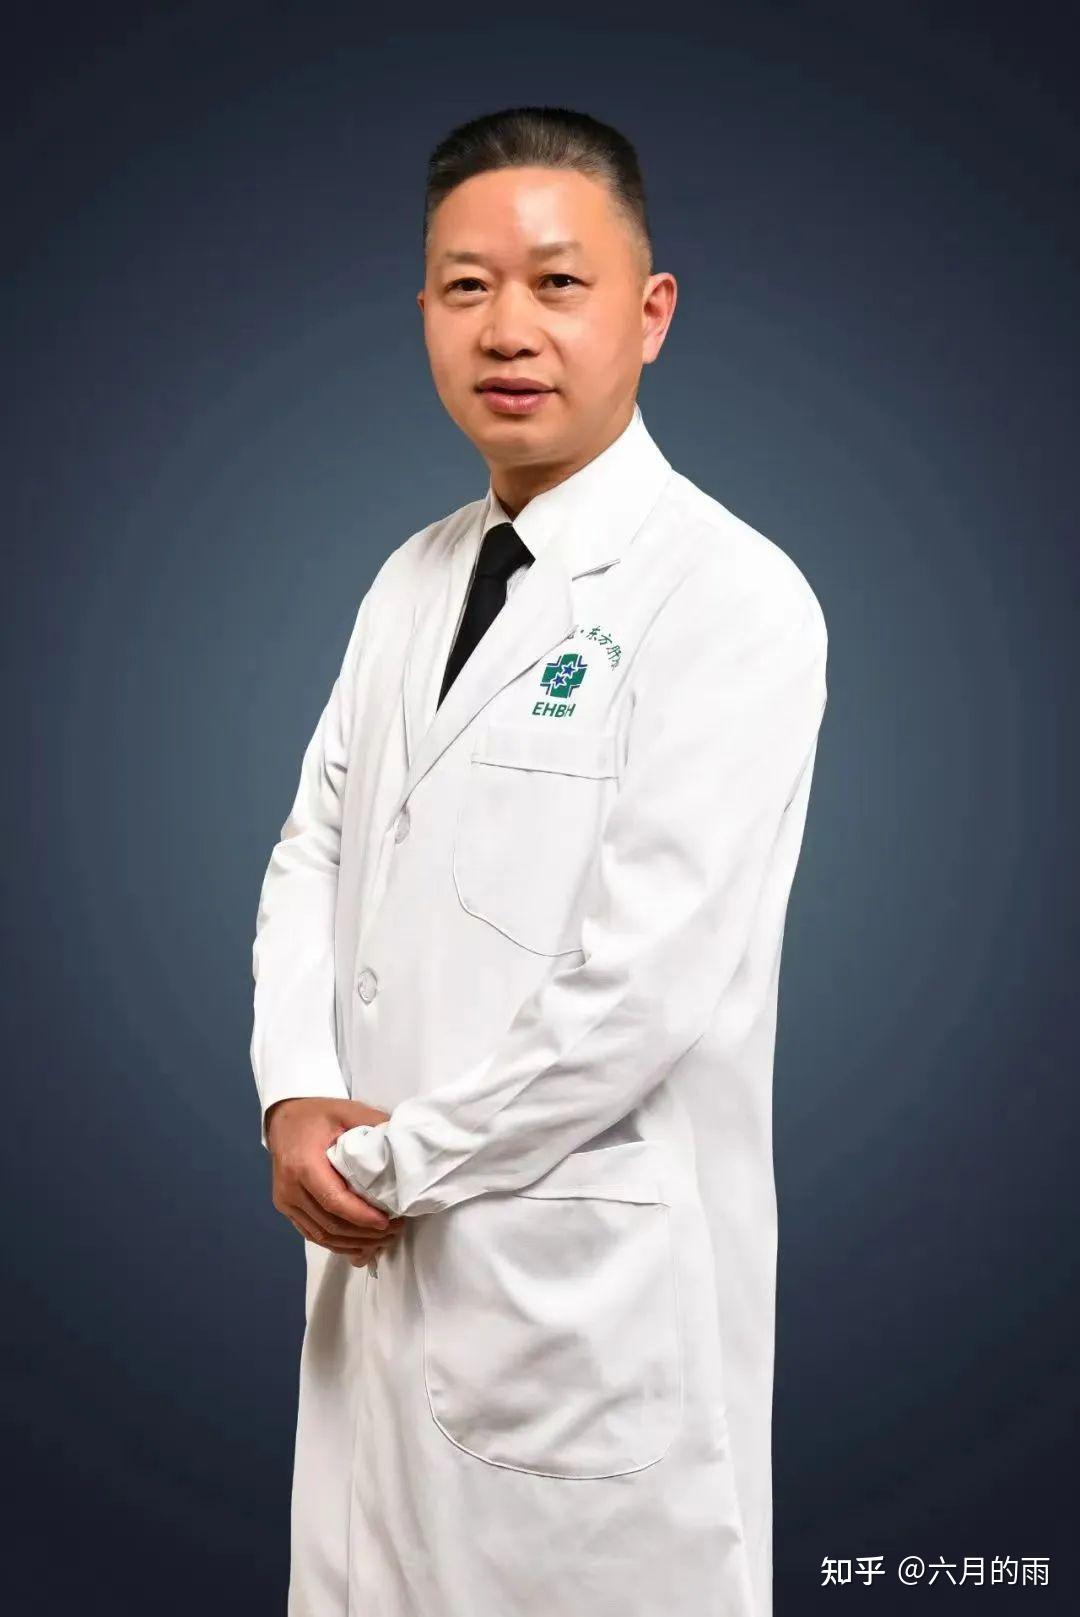 上海东方肝胆外科医院建设肝肿瘤微创诊治多学科诊疗平台 - 知乎